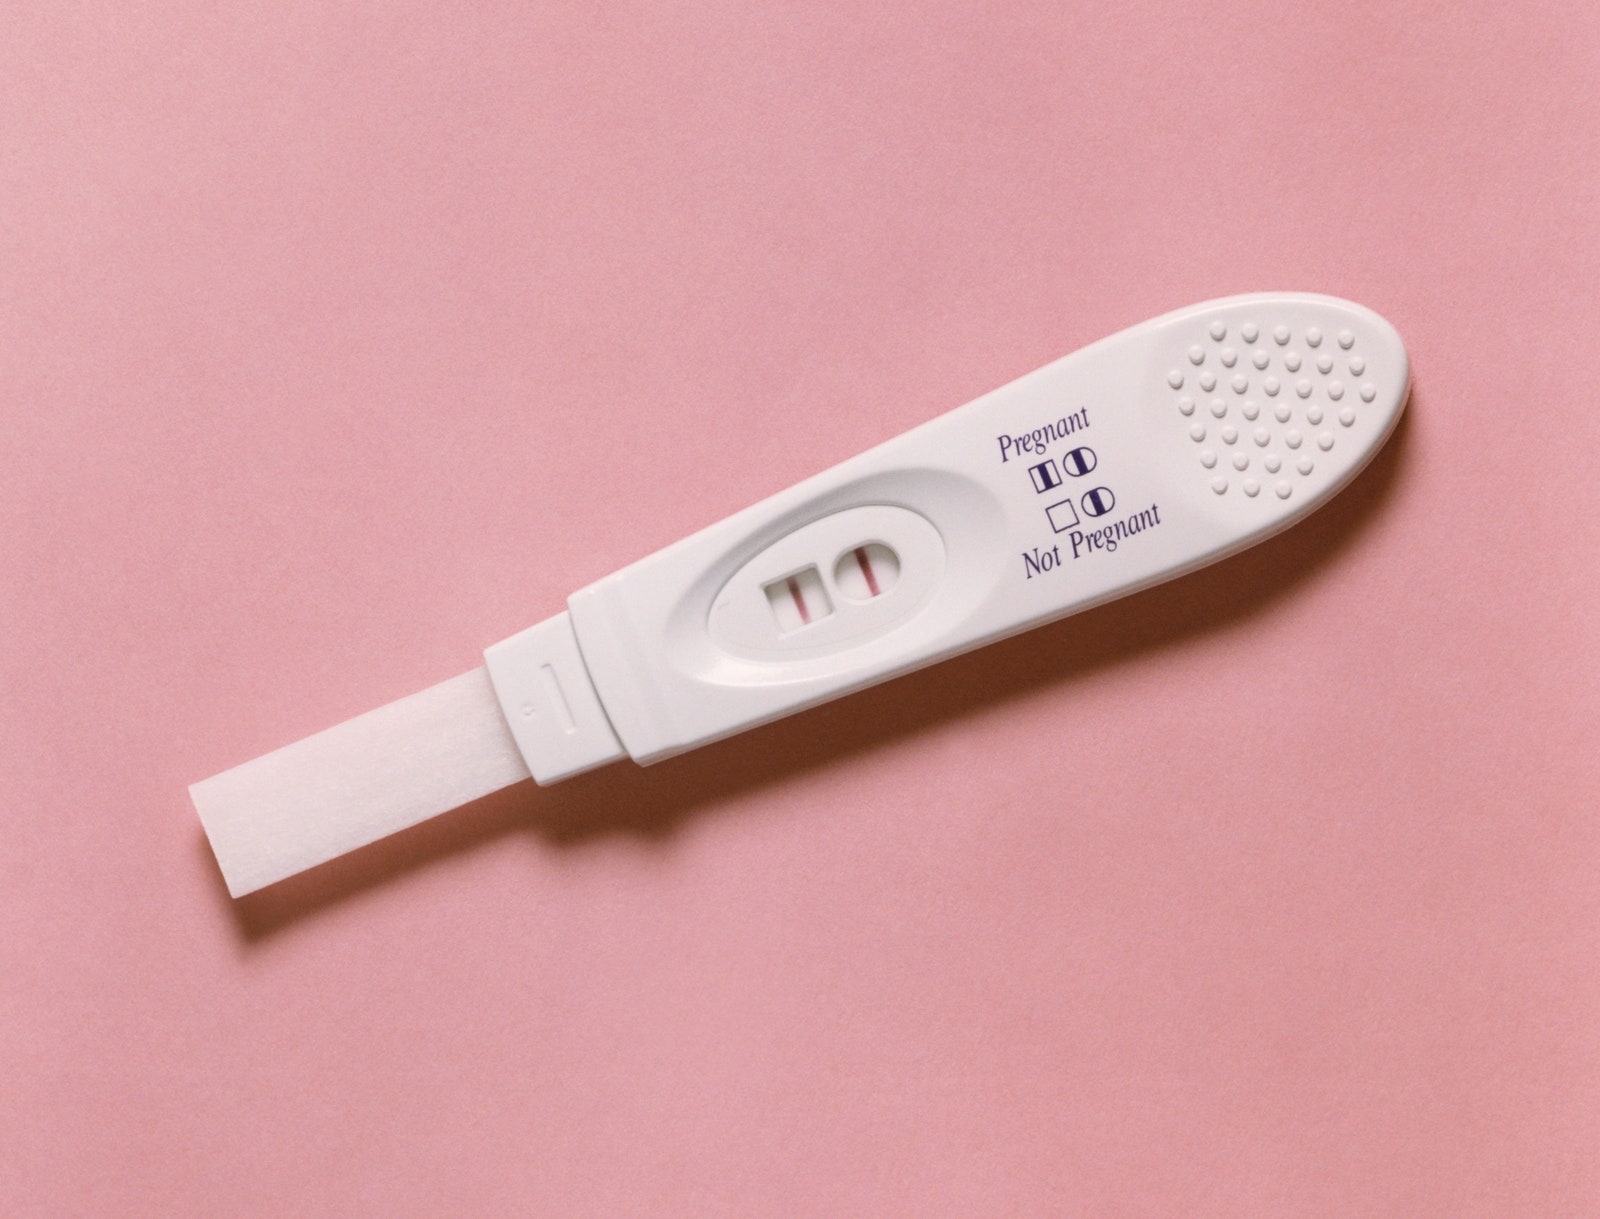 В США появился первый биоразлагаемый тест на беременность. После использования его можно смыть в унитаз